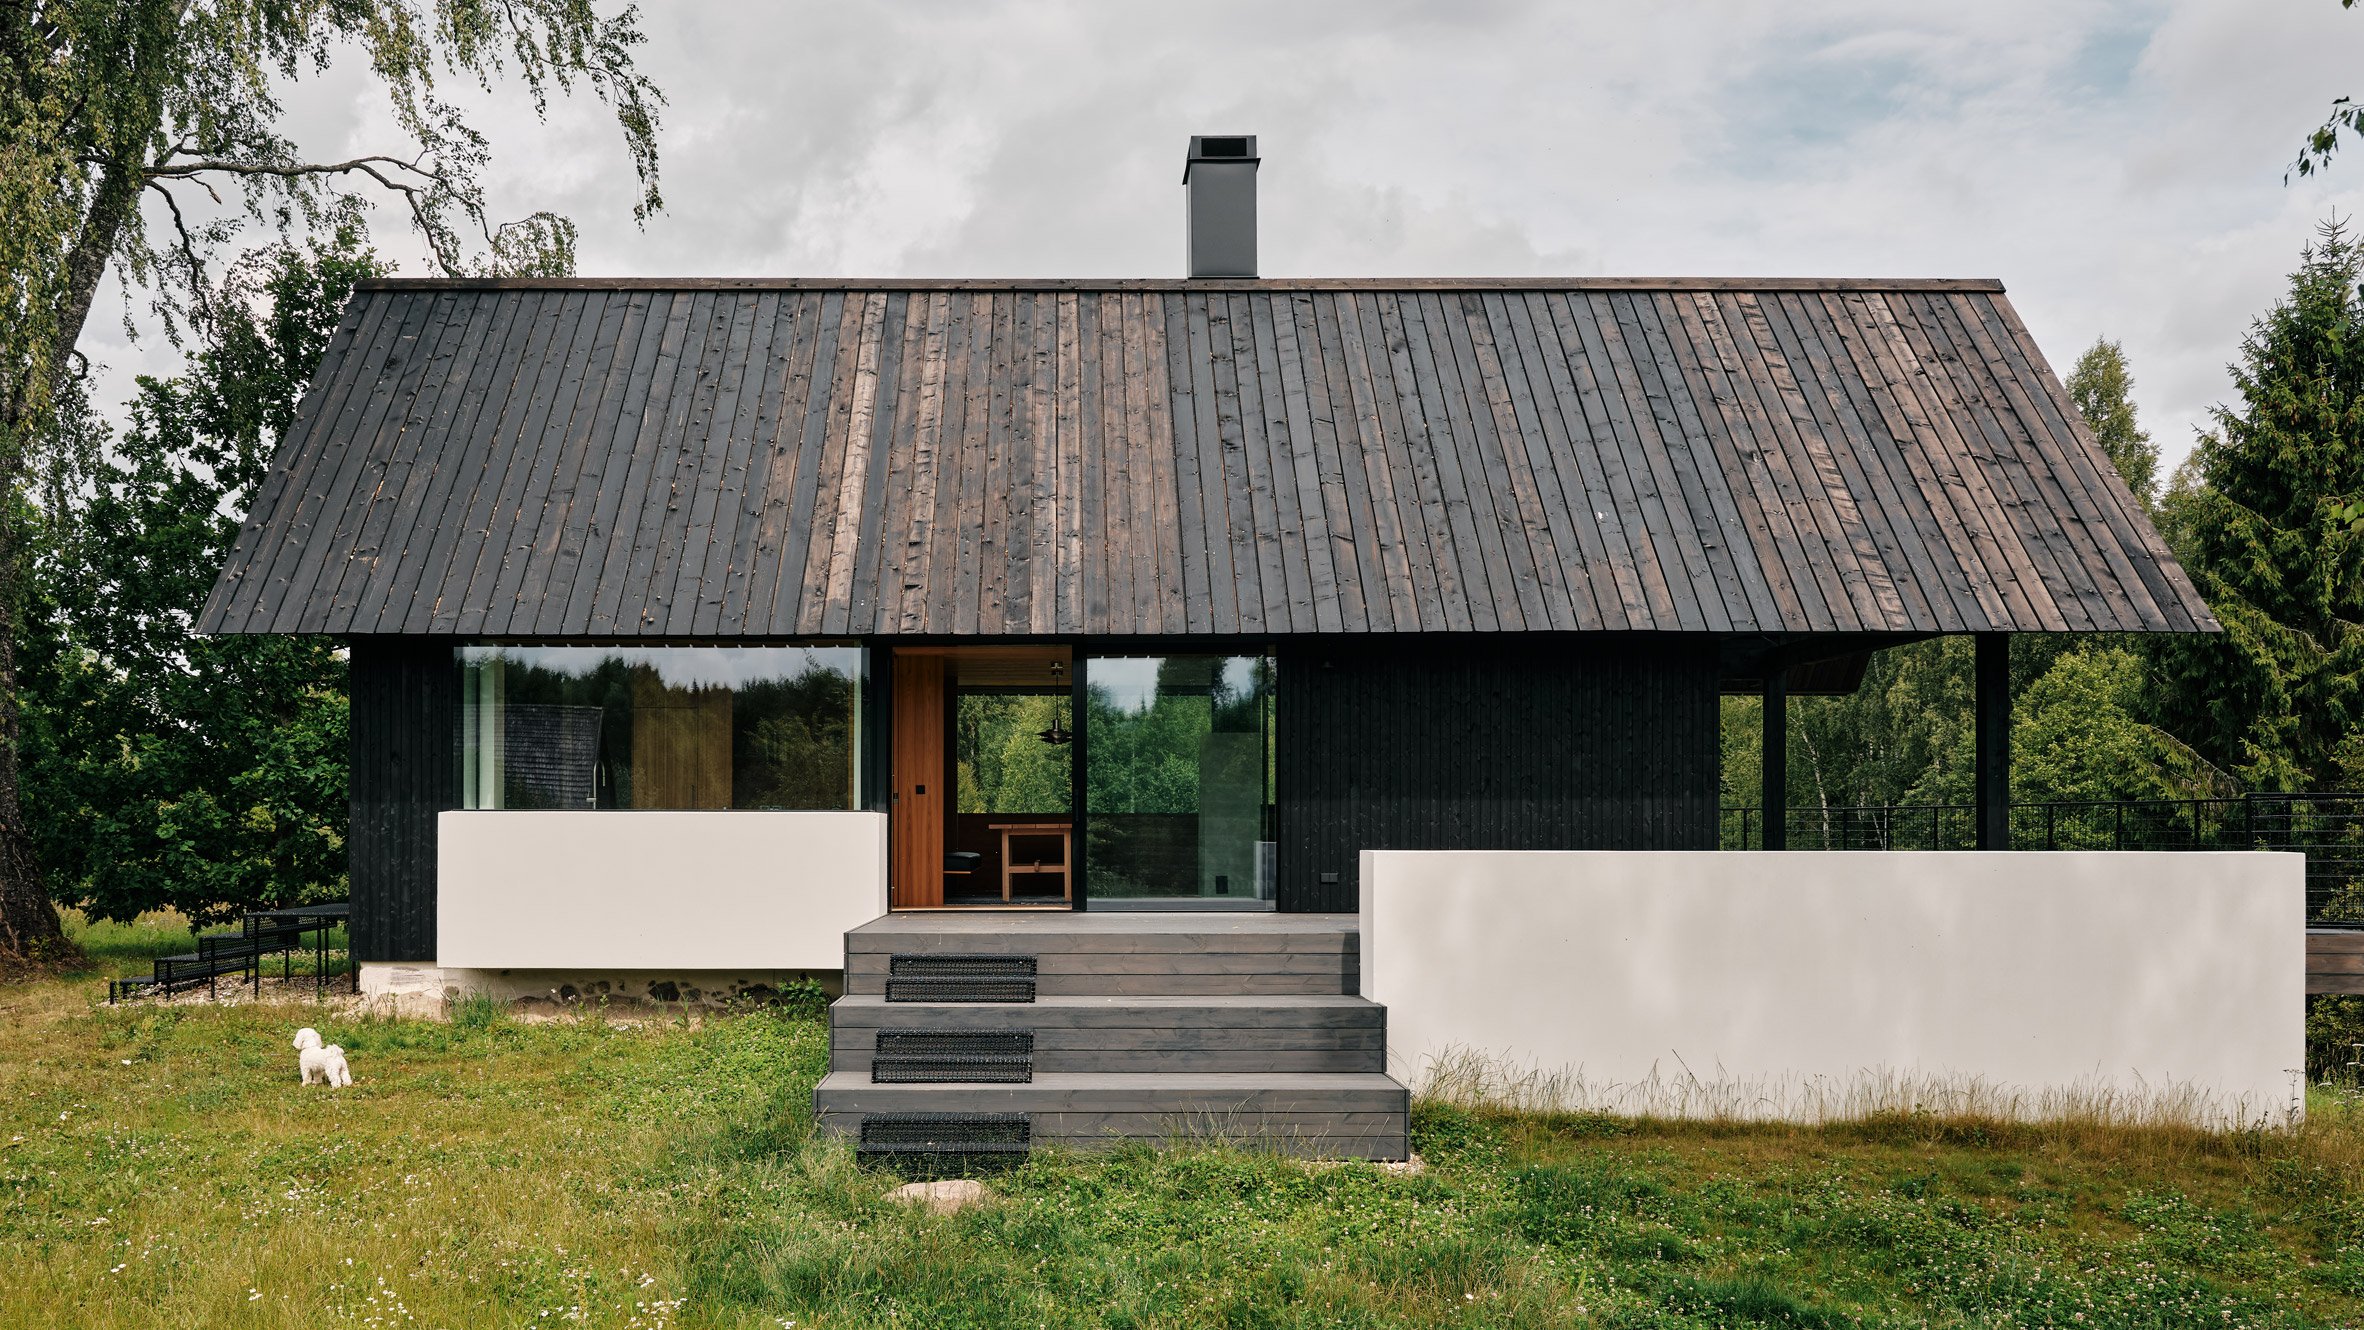 Põro House by Hanna Karits and Mari Hunt